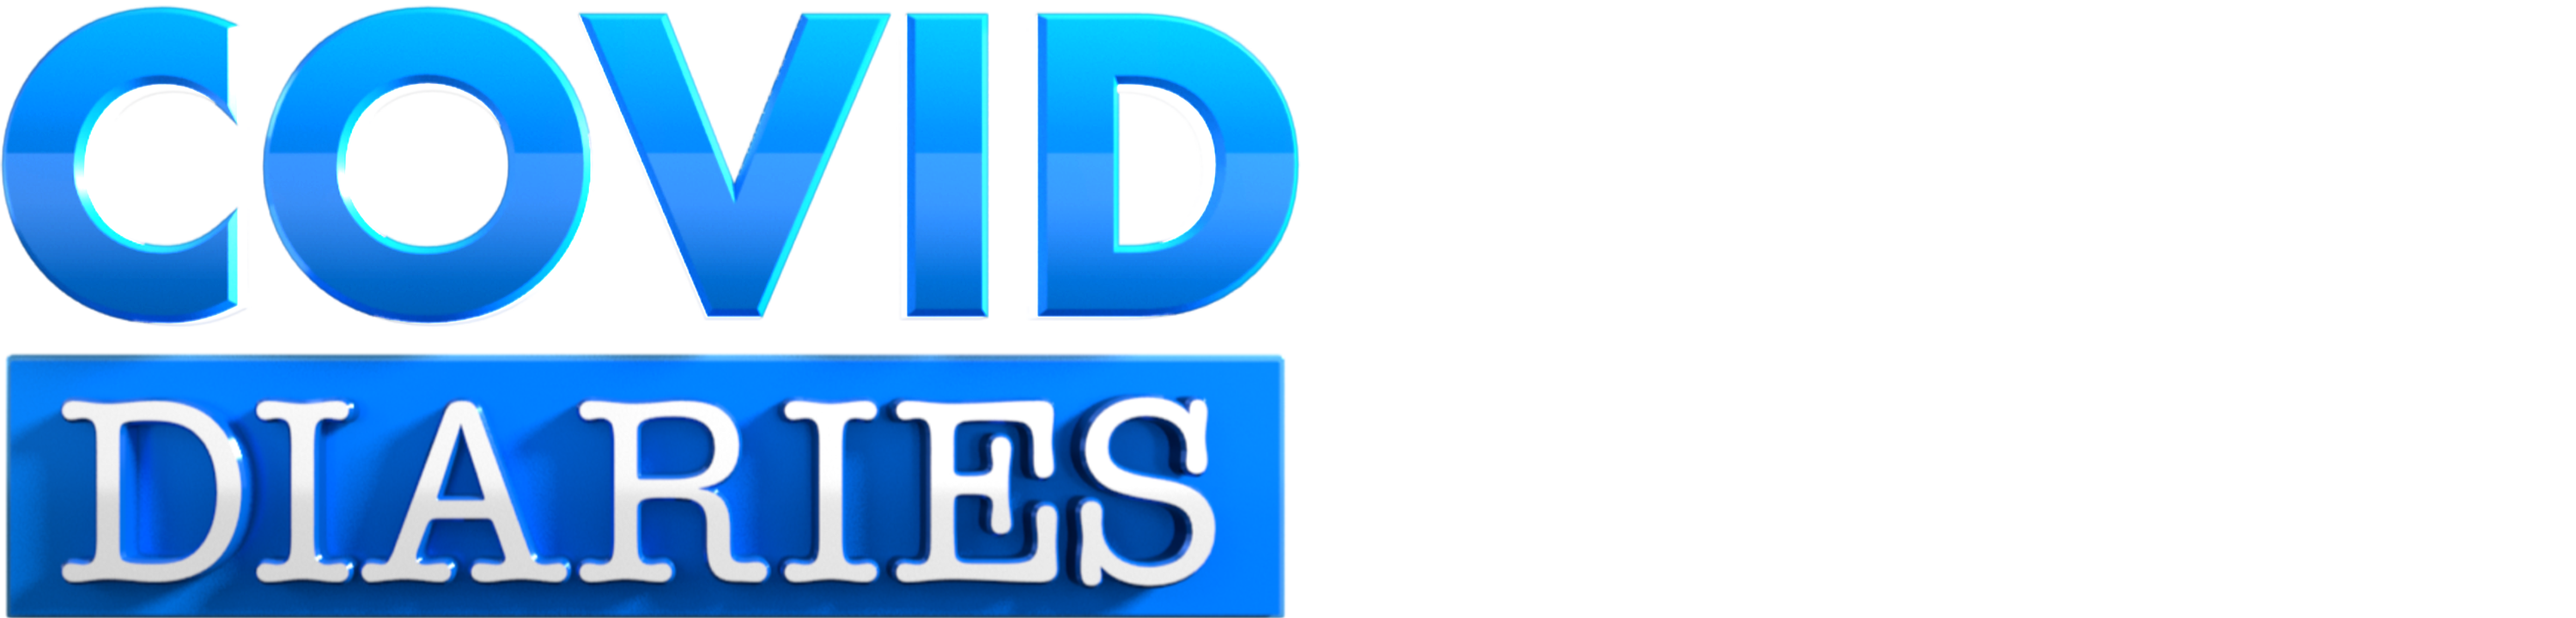 COVID Diaries logo